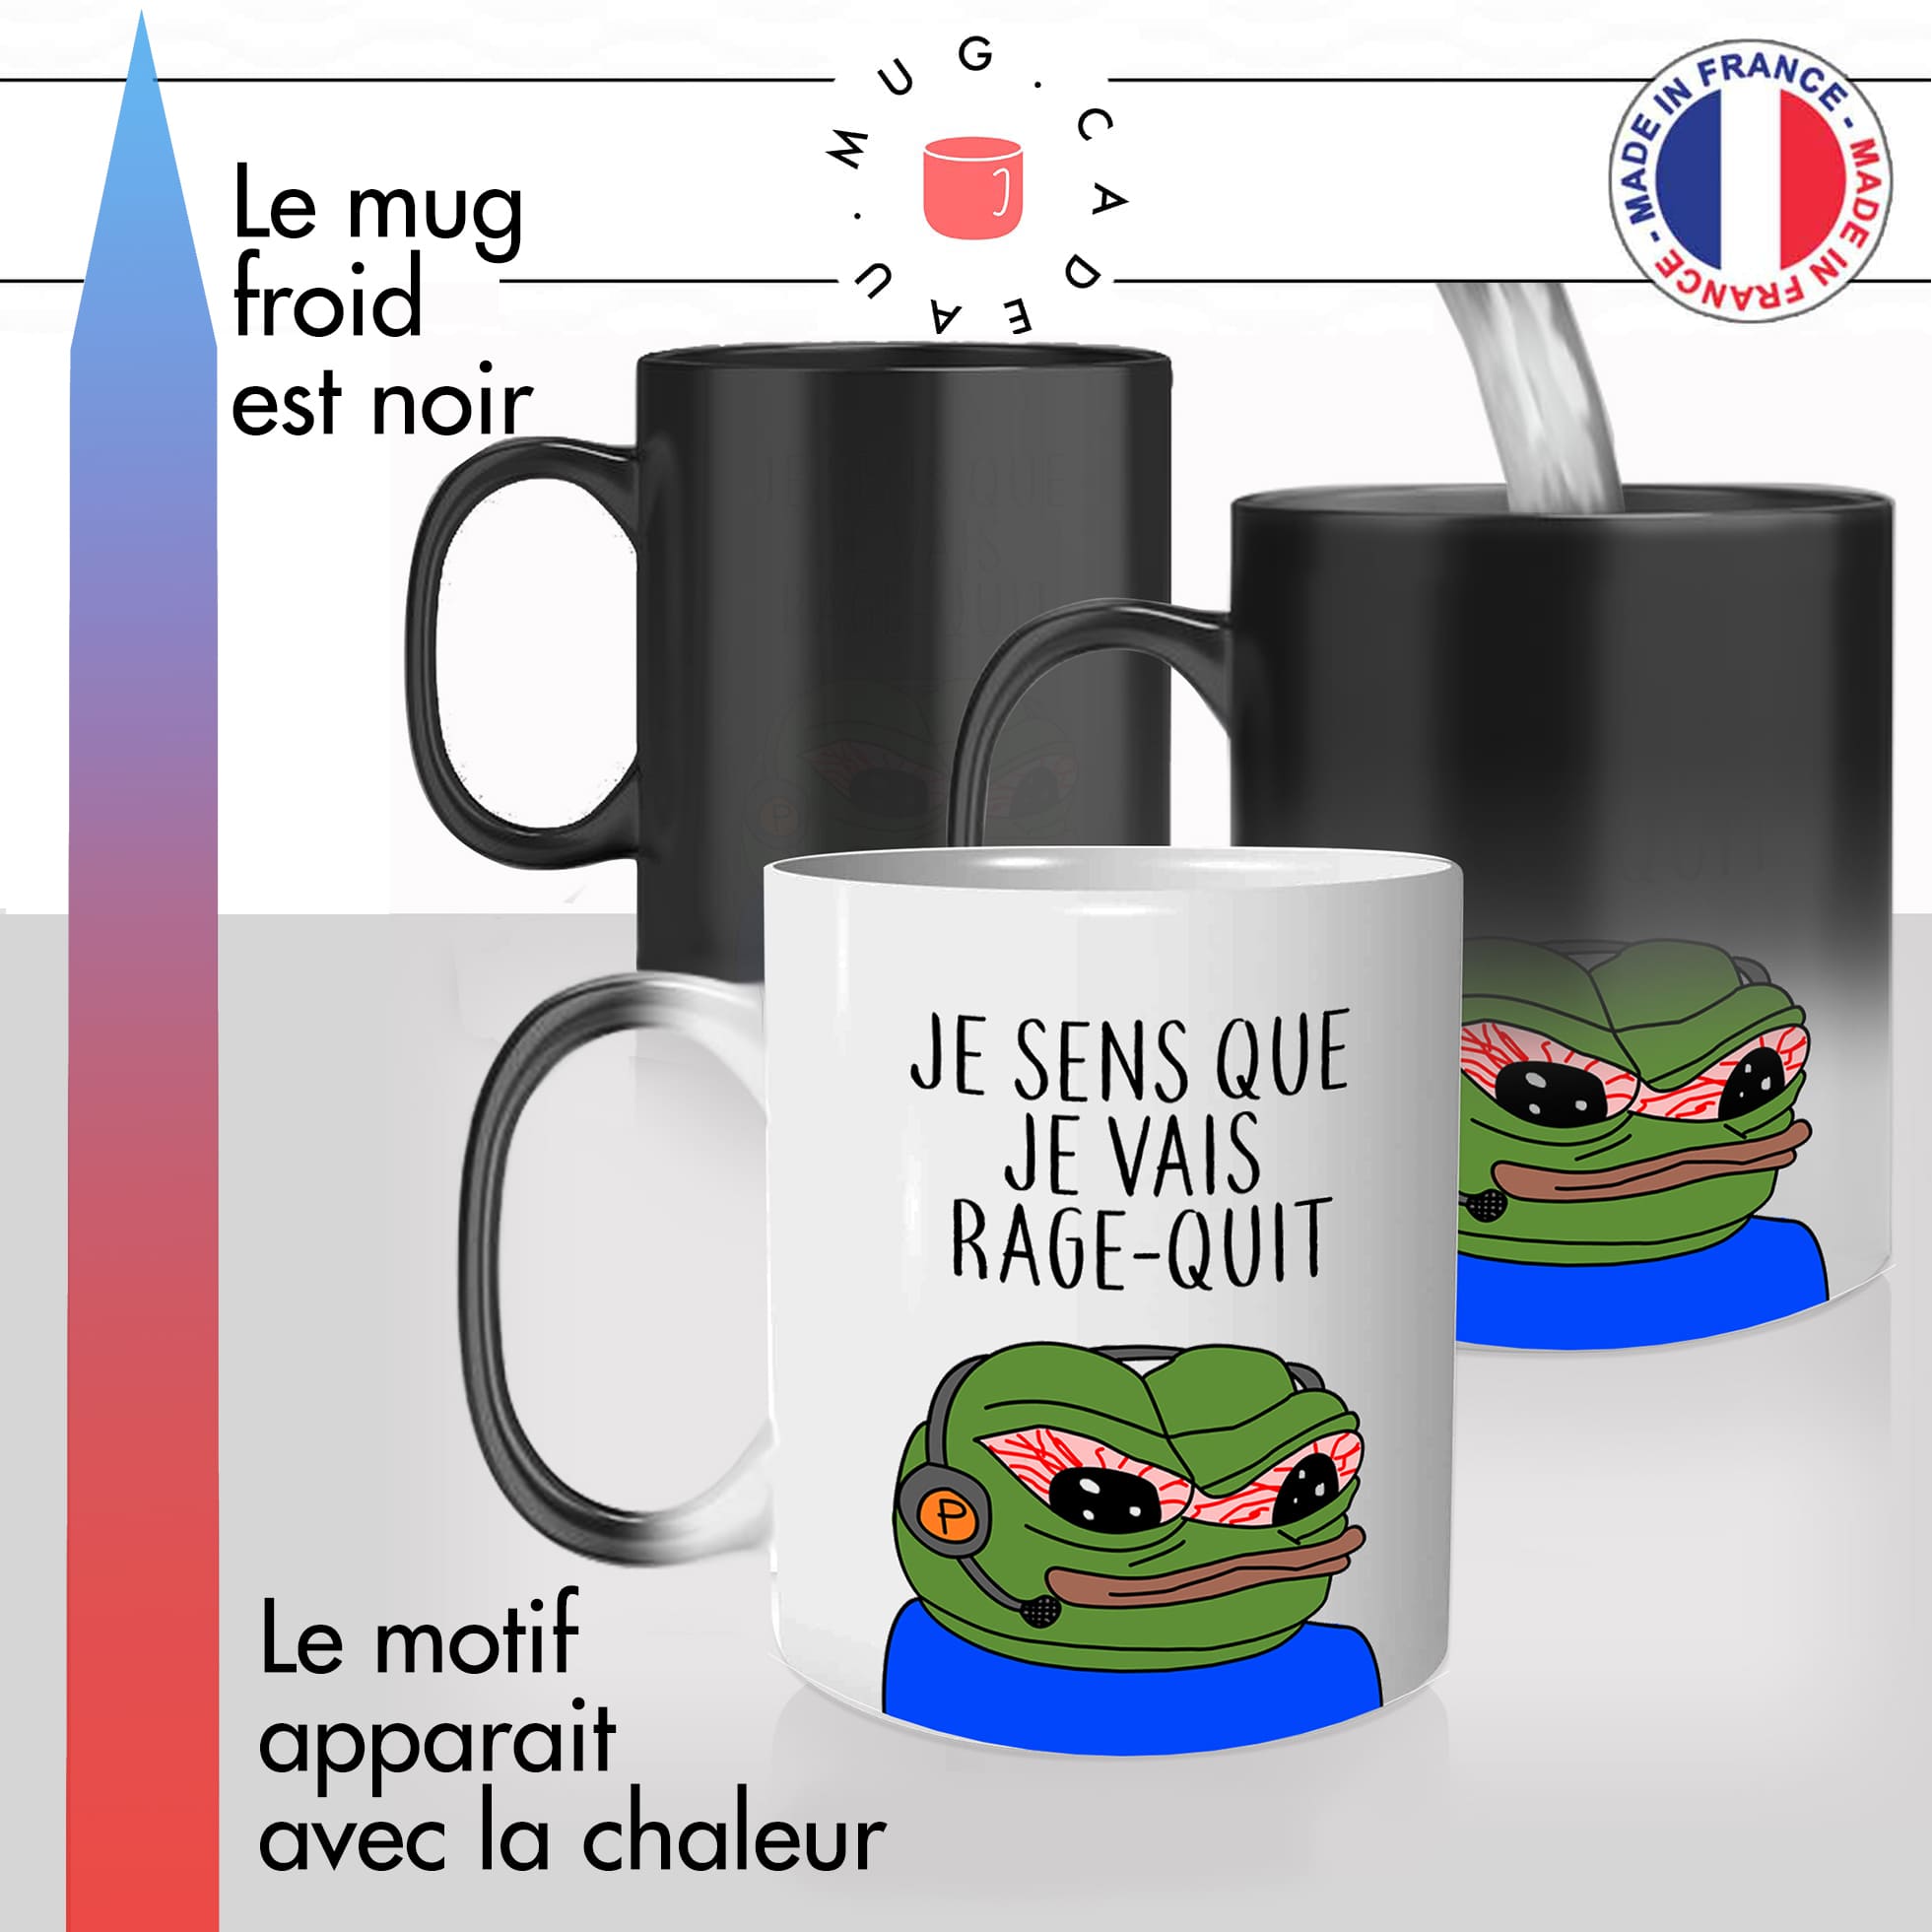 mug magique thermoréactif thermo chauffant personnalisé mug pepe frog gamer rage quit joueur casque player idée cadeau fun original